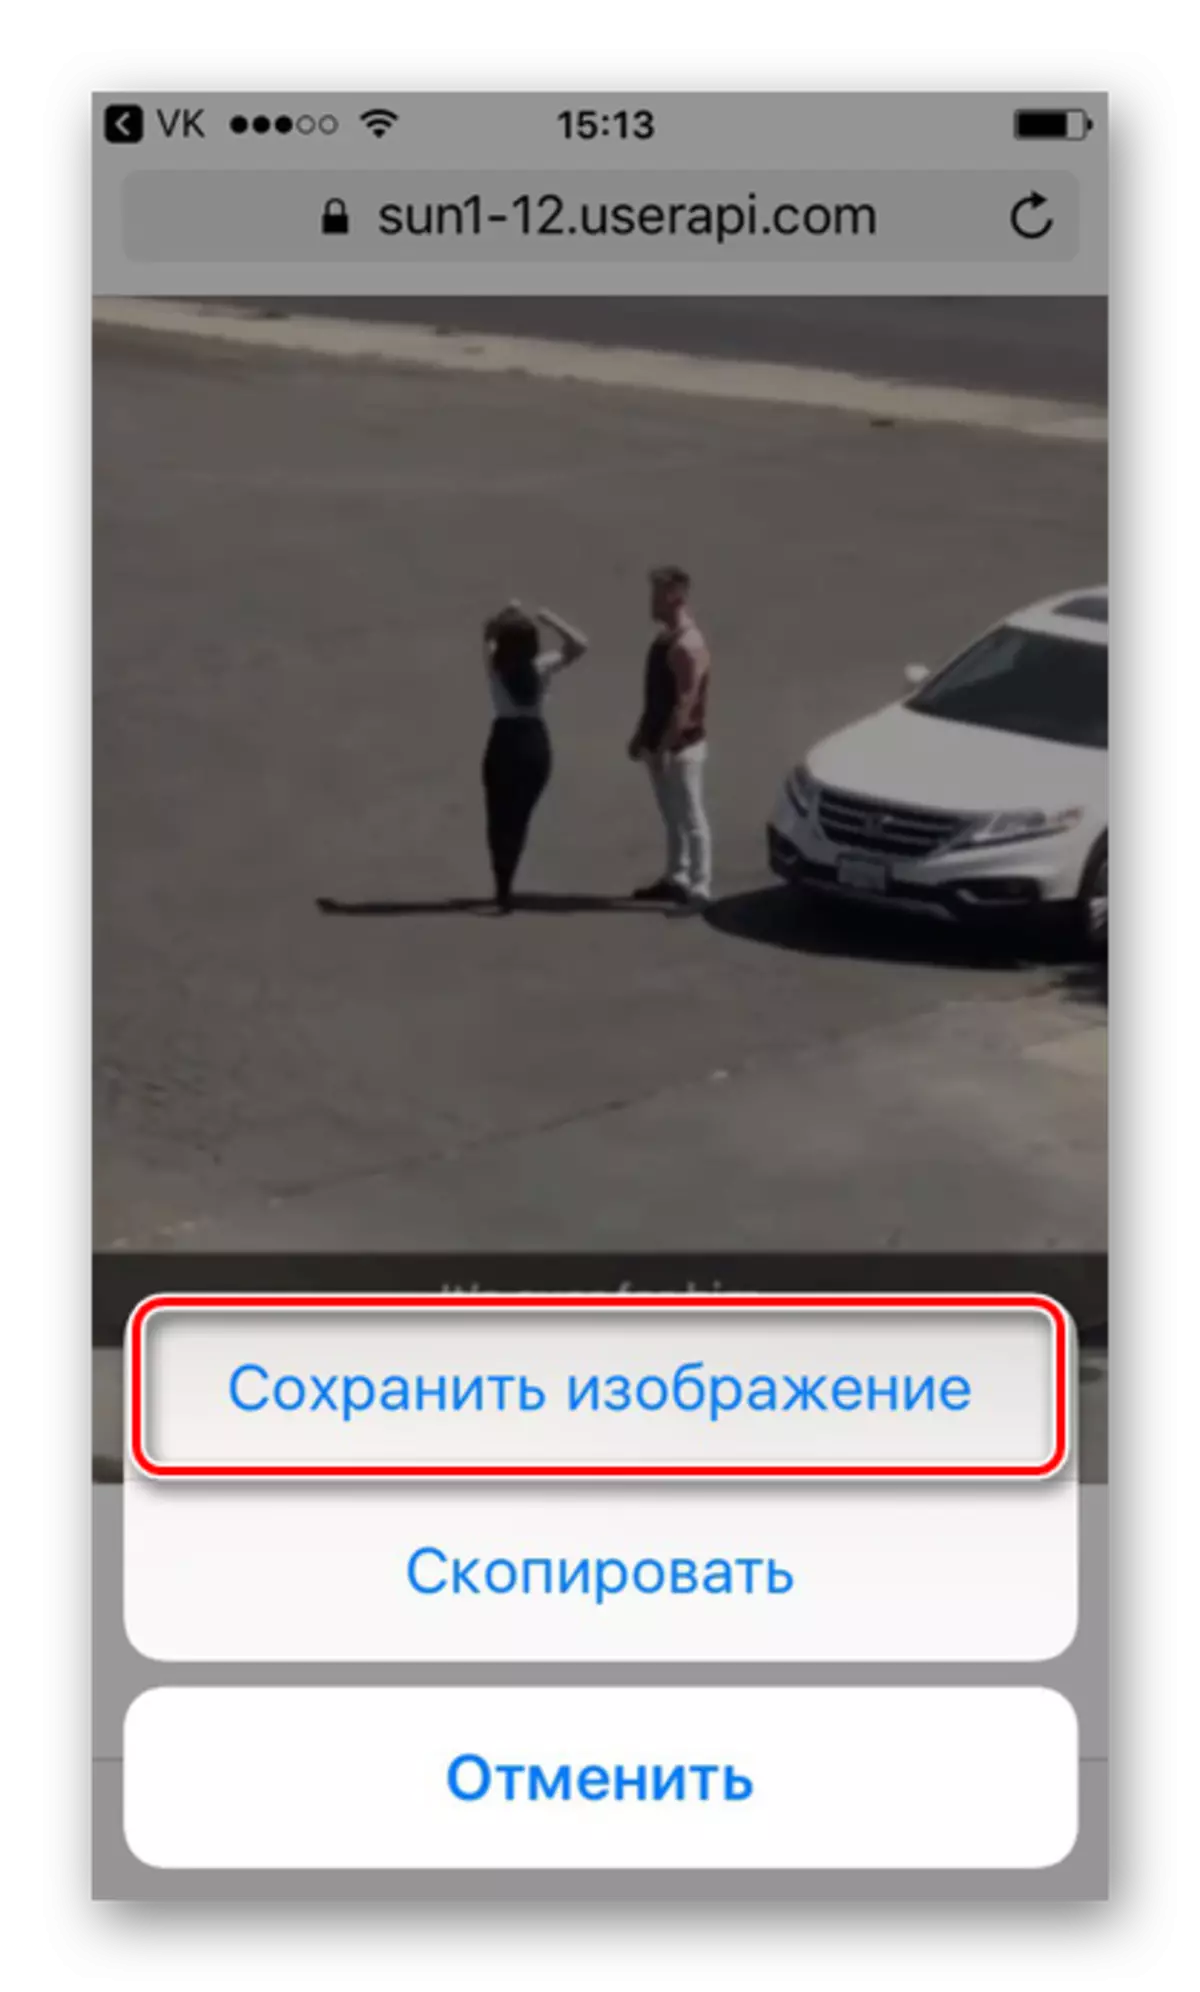 Εξοικονόμηση Gifs από το Vkontakte μέσω του προγράμματος περιήγησης Safari στο iPhone